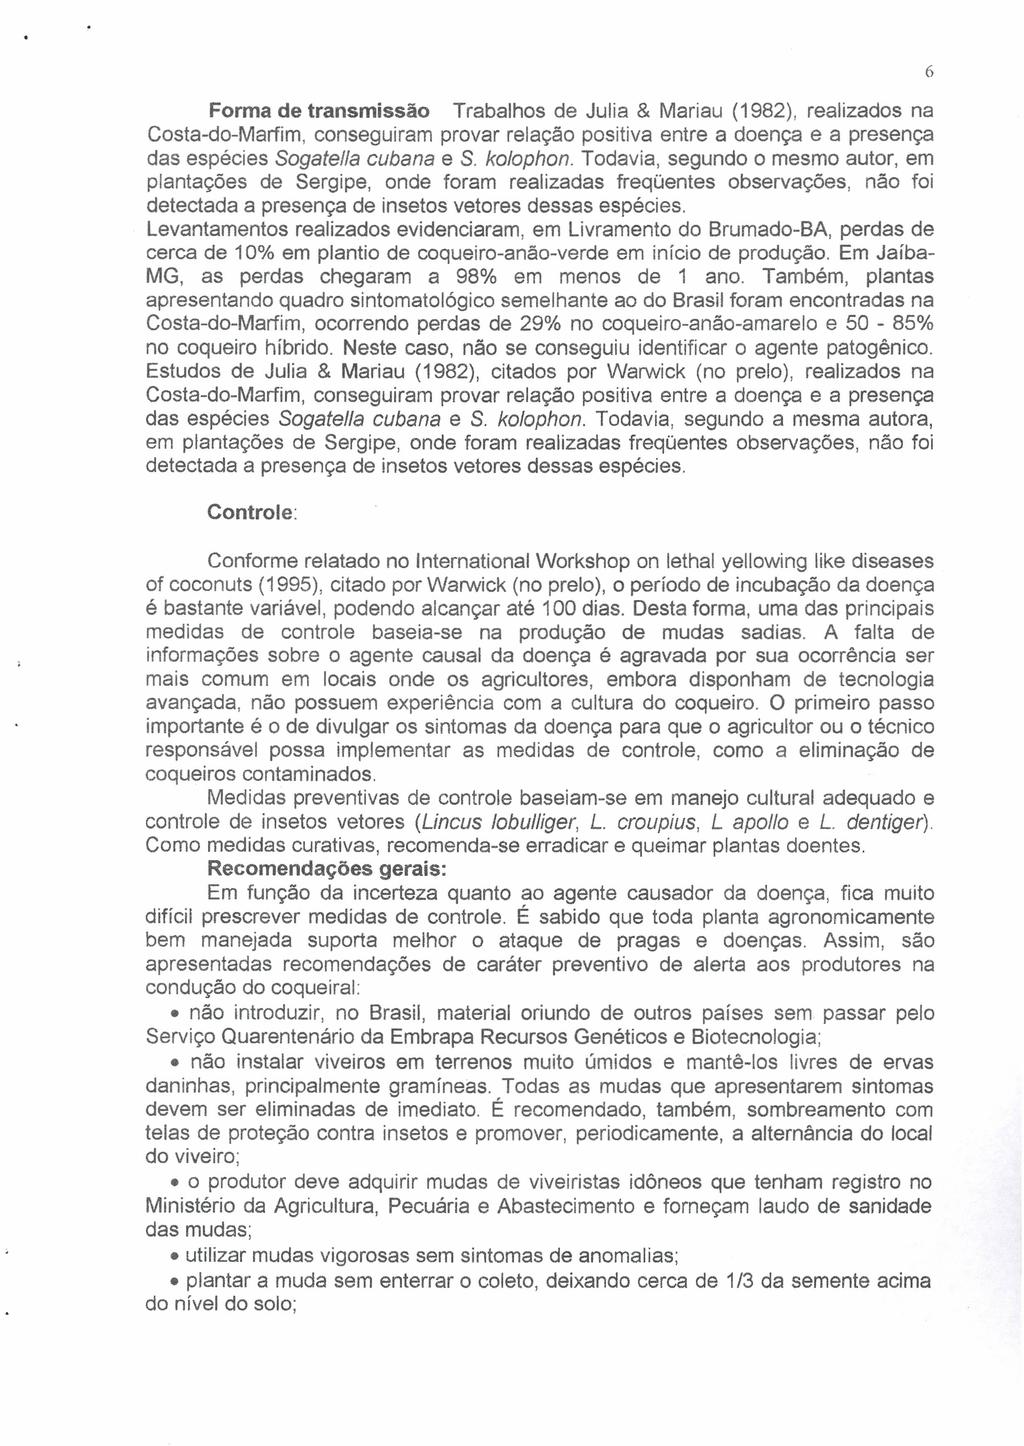 Forma de transmissão Trabalhos de Julia & Mariau (1982), realizados na Costa-do-Marfim, conseguiram provar relação positiva entre a doença e a presença das espécies Sogatella cubana e S. kotophon.